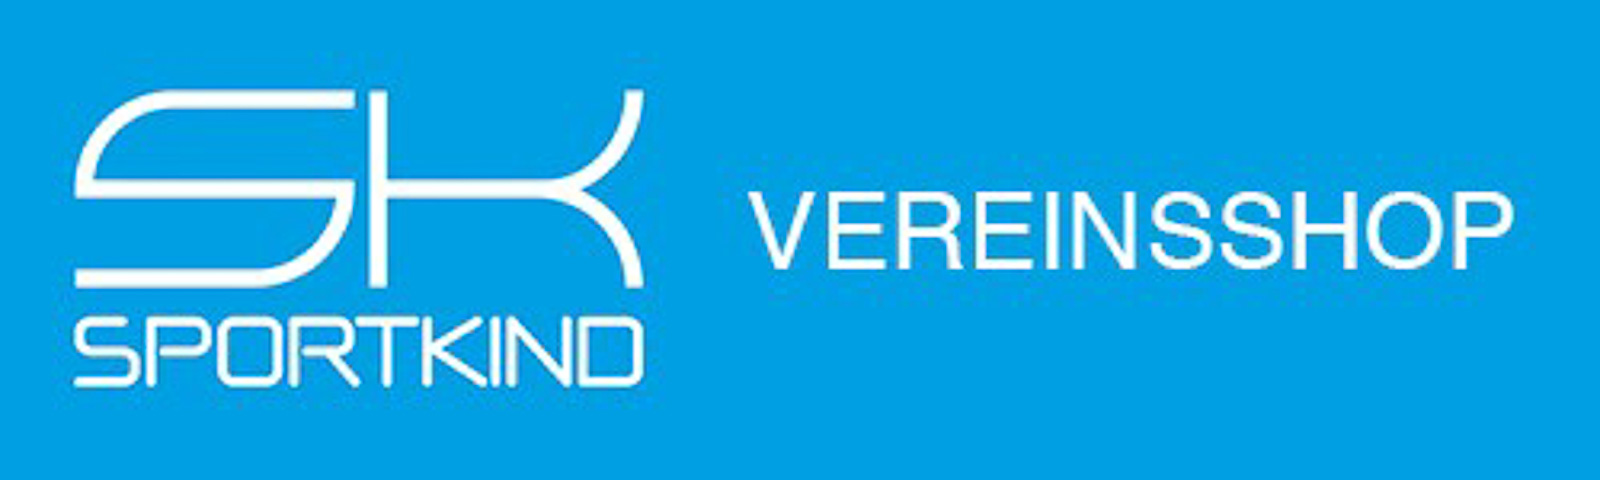 SPORTKIND Vereinsshop Logo